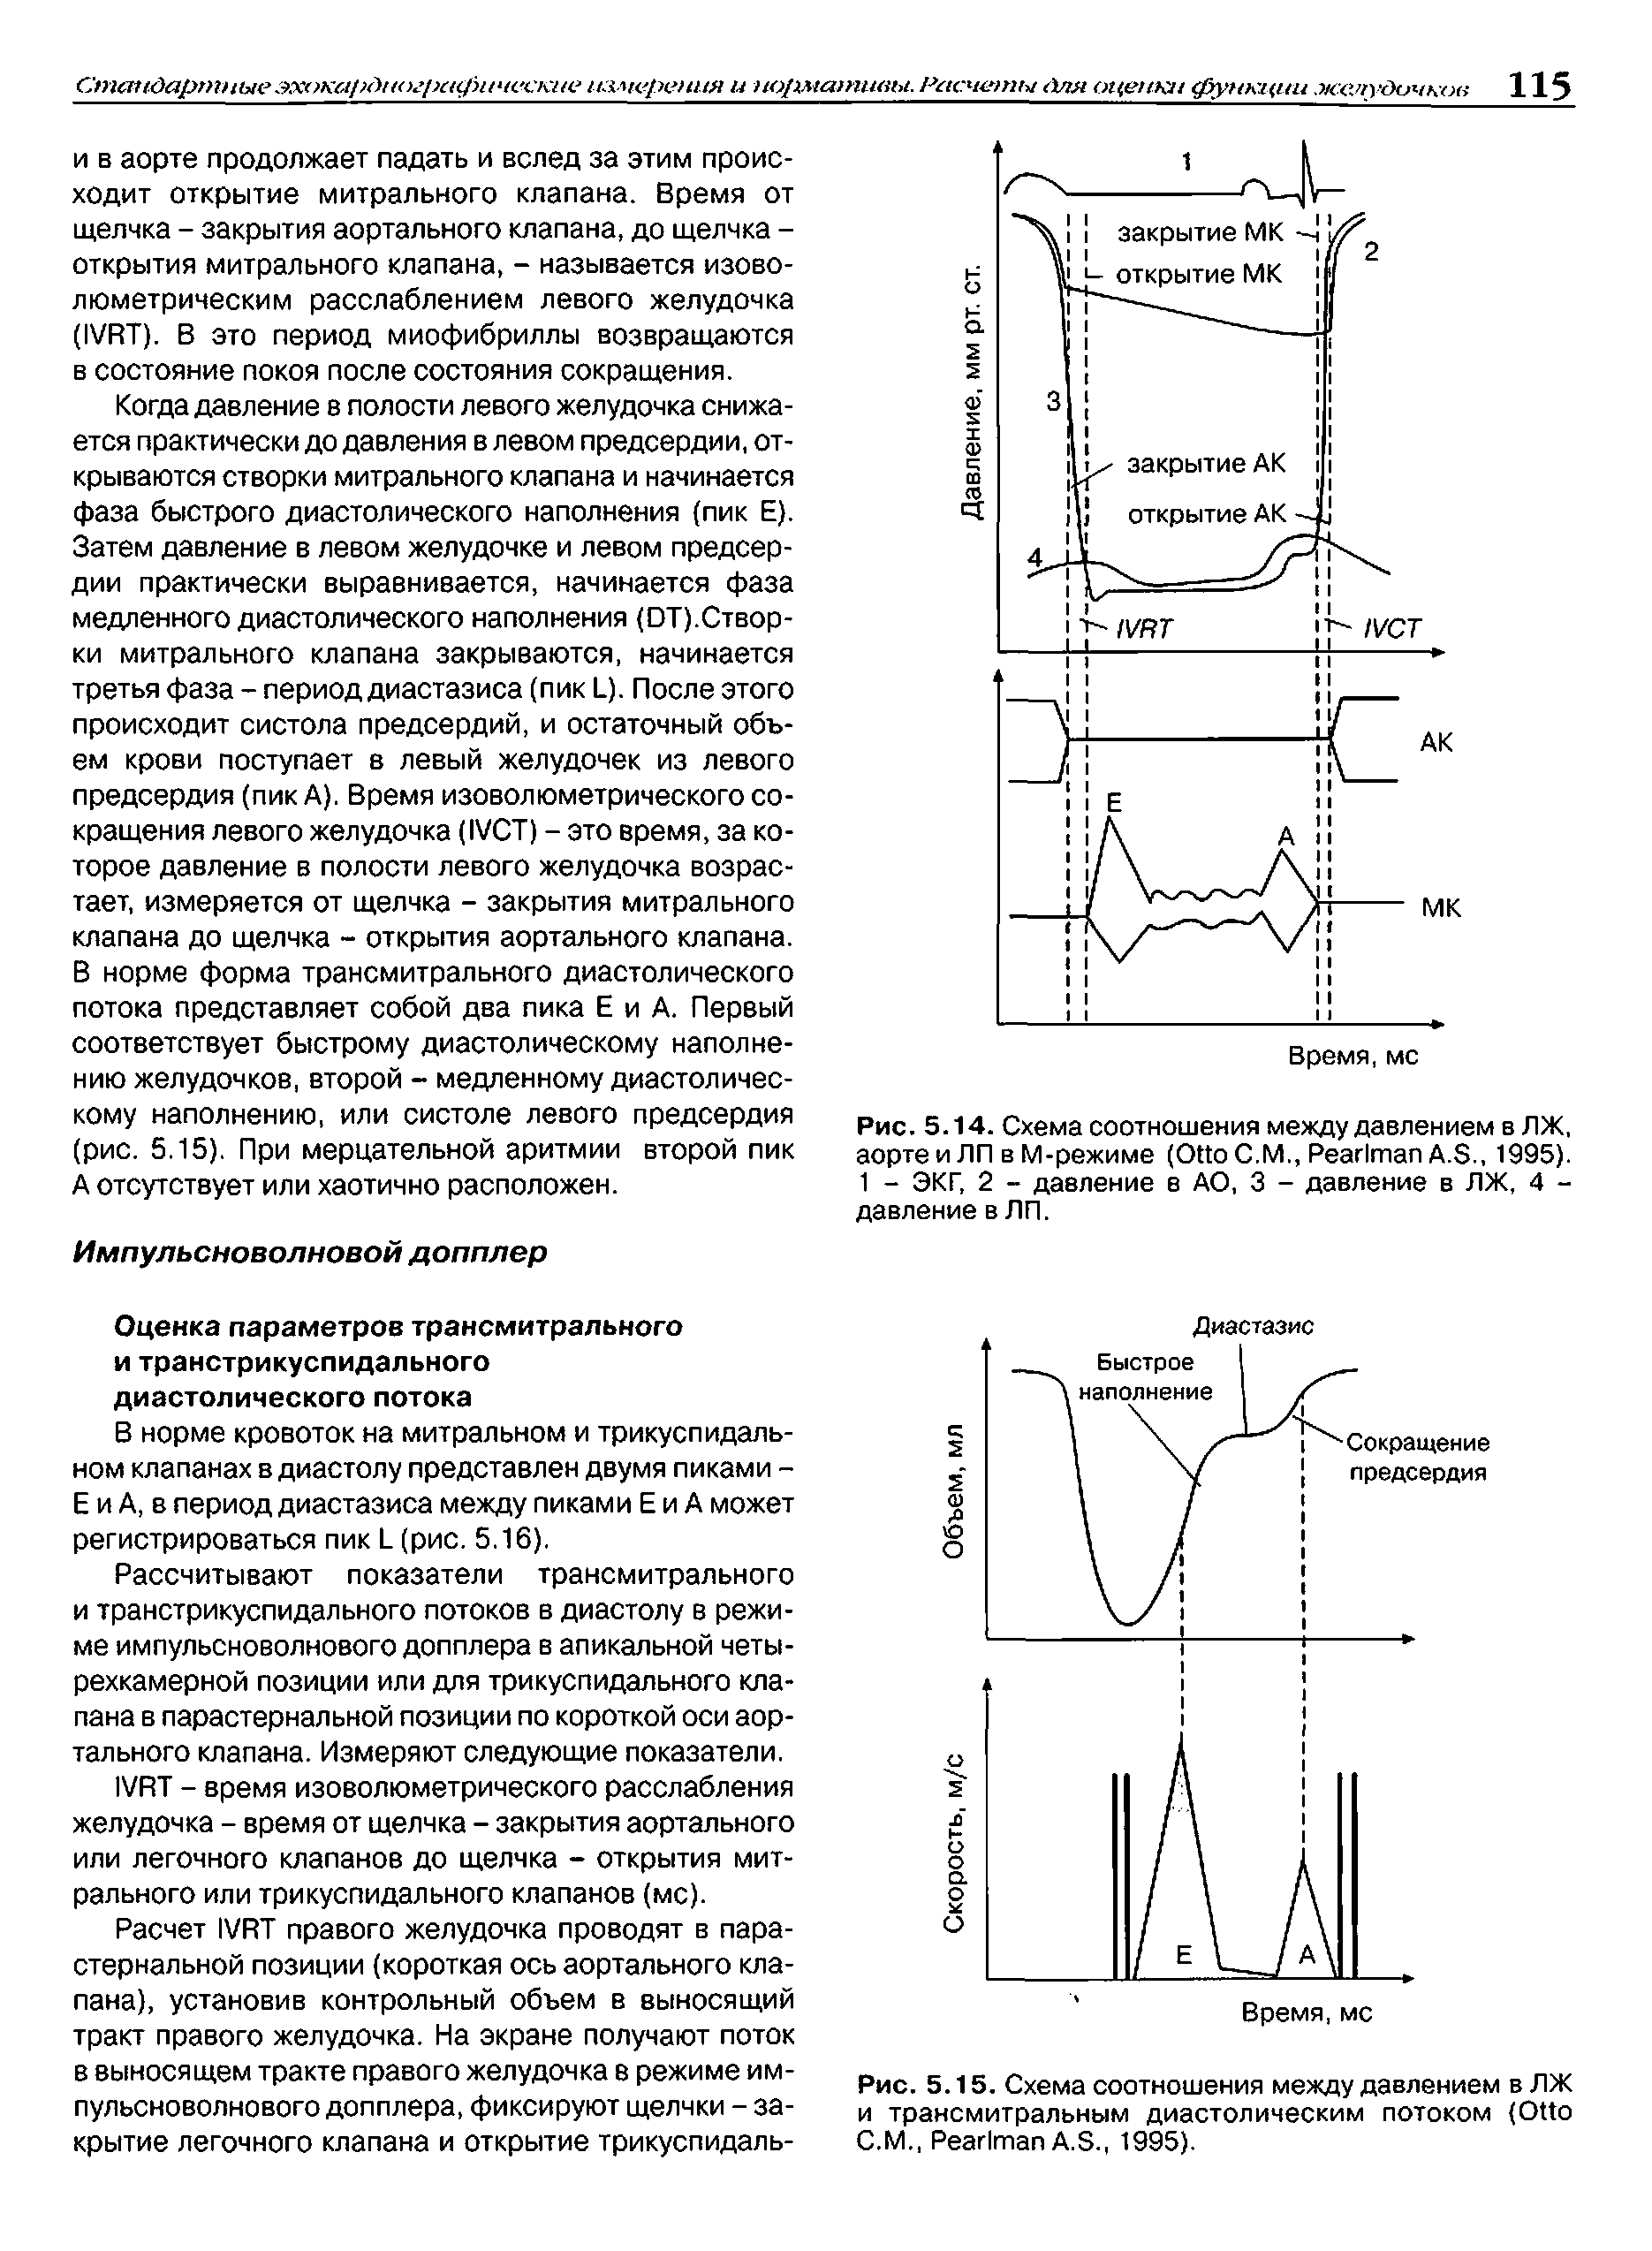 Рис. 5.15. Схема соотношения между давлением в ЛЖ и трансмитральным диастолическим потоком (O С.М., P A.S., 1995).